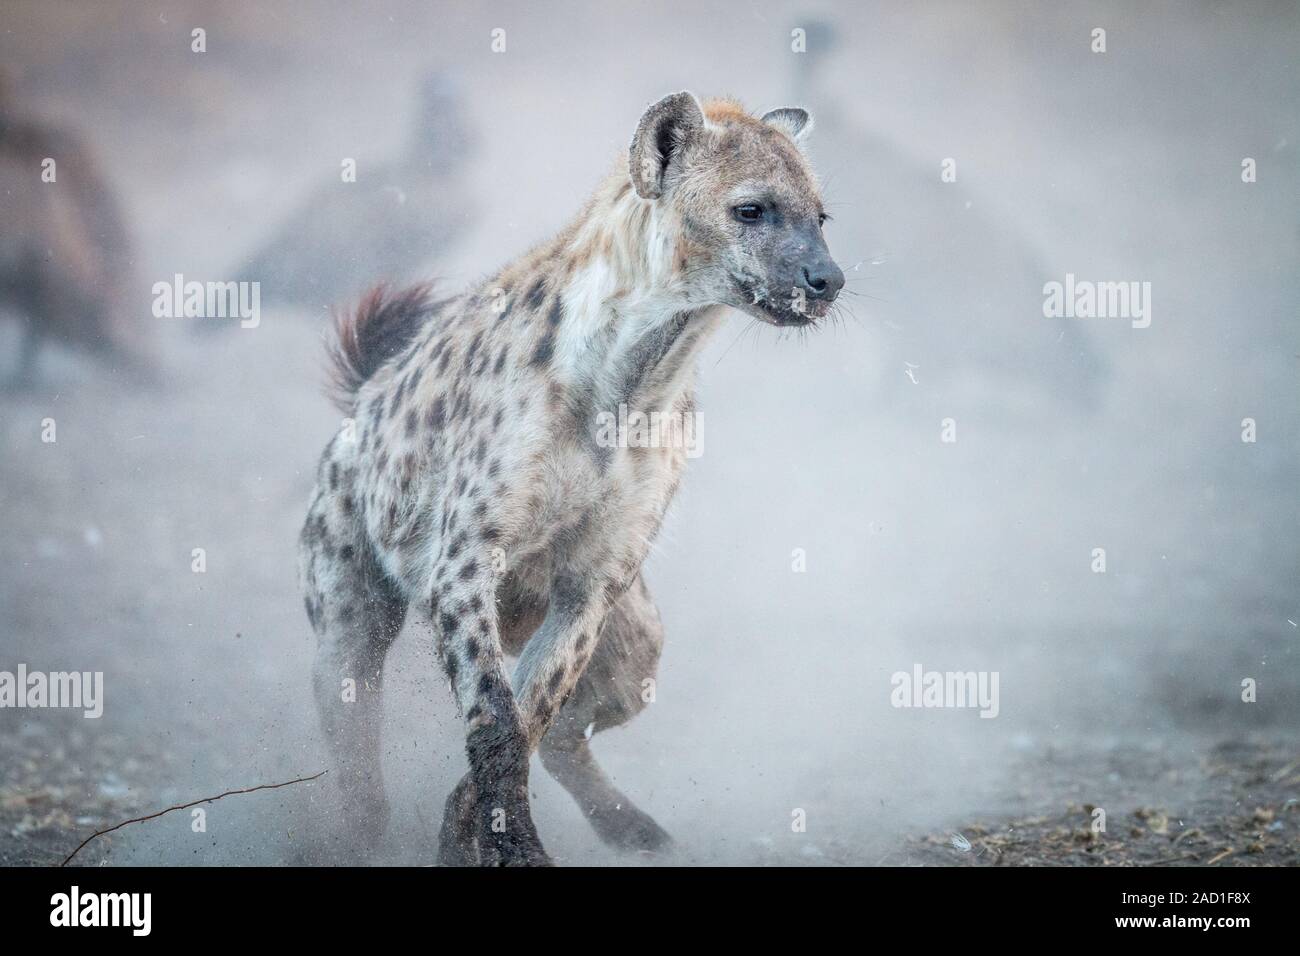 Ejecutando Spotted Hyena de buitres en el fondo. Foto de stock